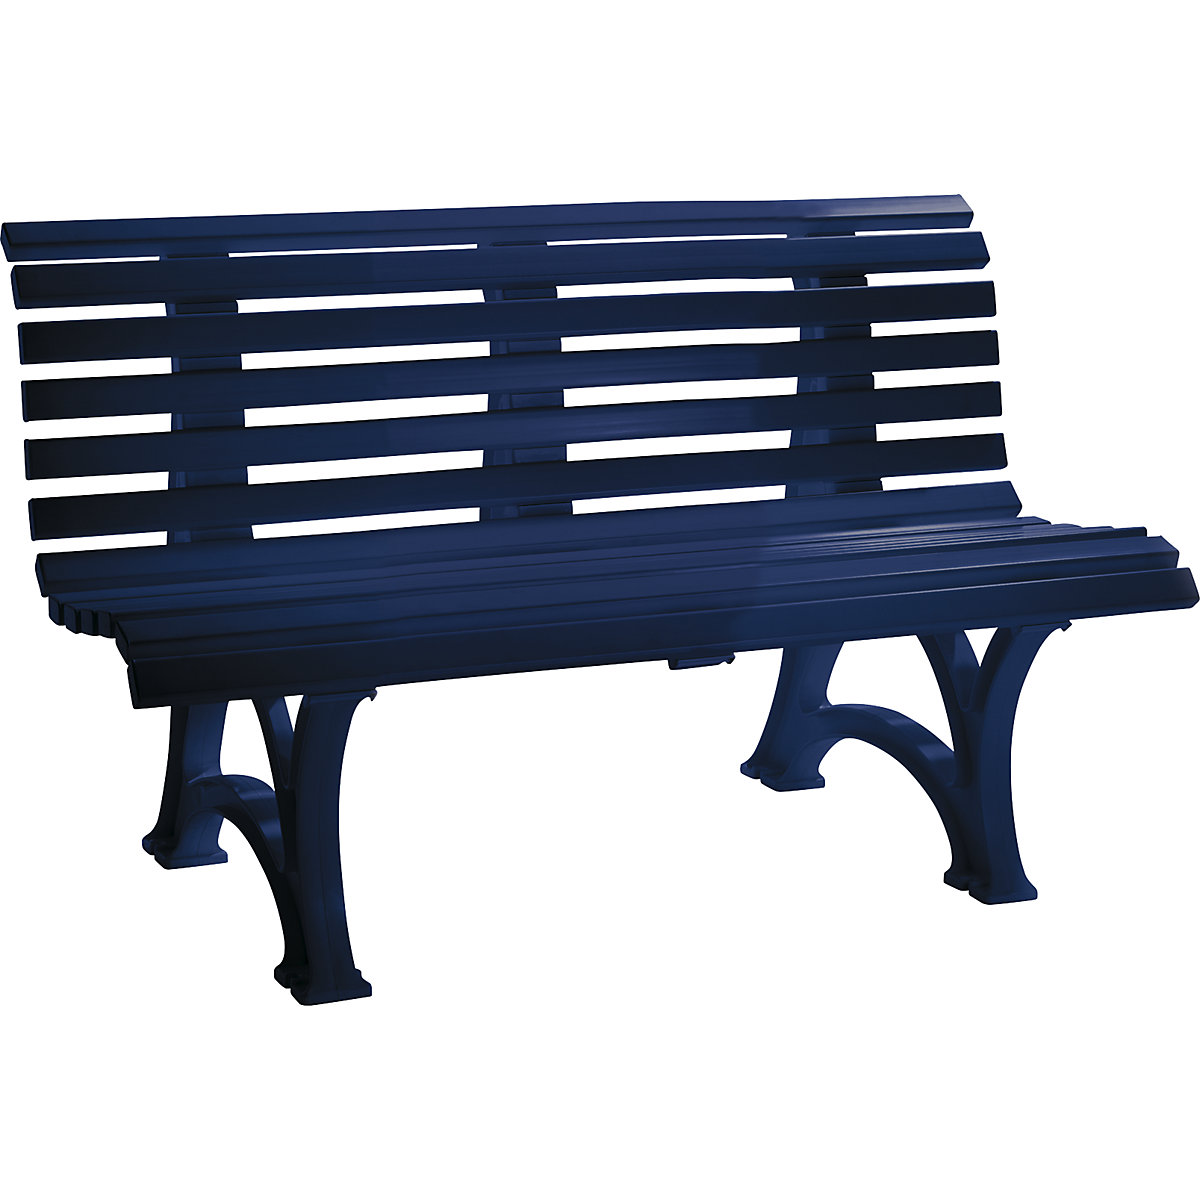 Parková lavička z plastu, s 13 lištami, šířka 1500 mm, ocelově modrá-10